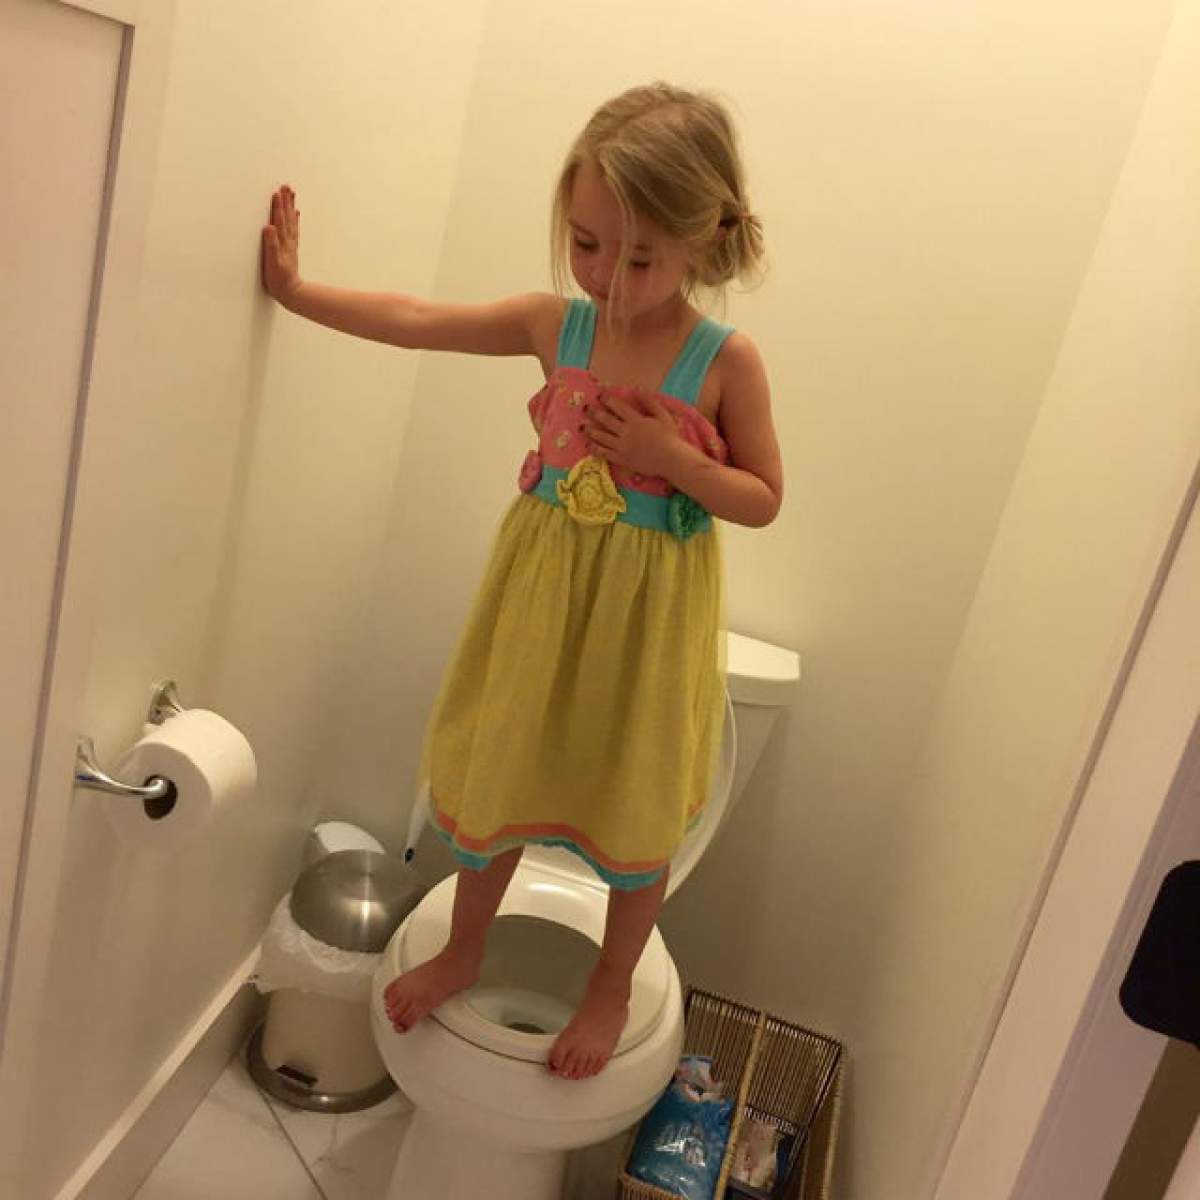 Mama unei fetiţe a intrat în baie și a găsit-o aşa. Când a aflat ce făcea i-au dat lacrimile